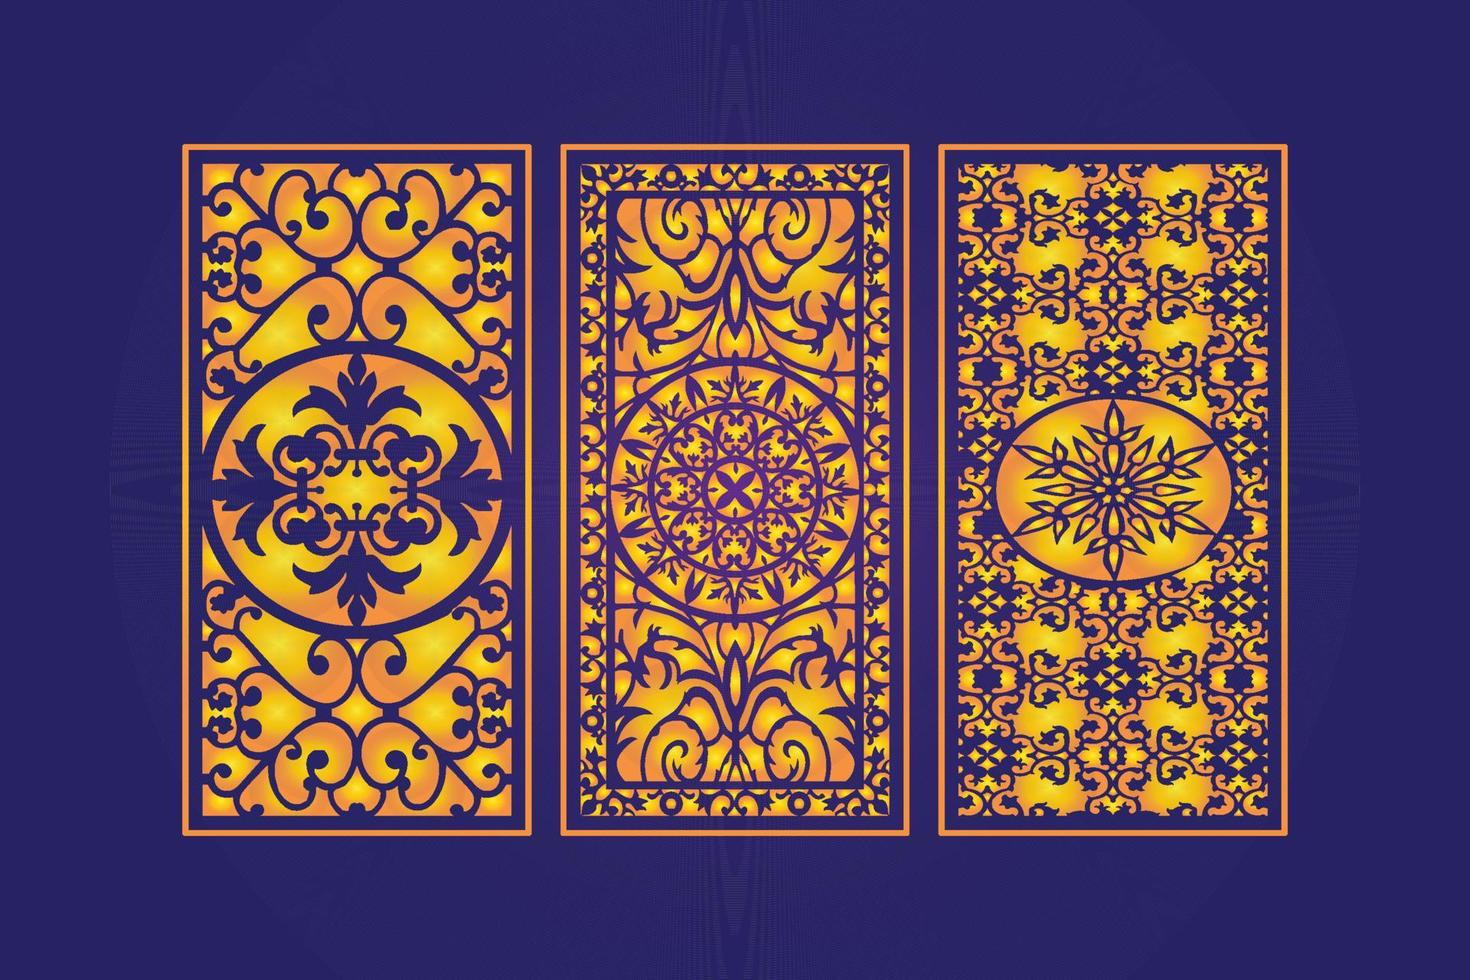 plantilla de paneles de corte láser decorativos islámicos con textura geométrica abstracta y láser floral vector